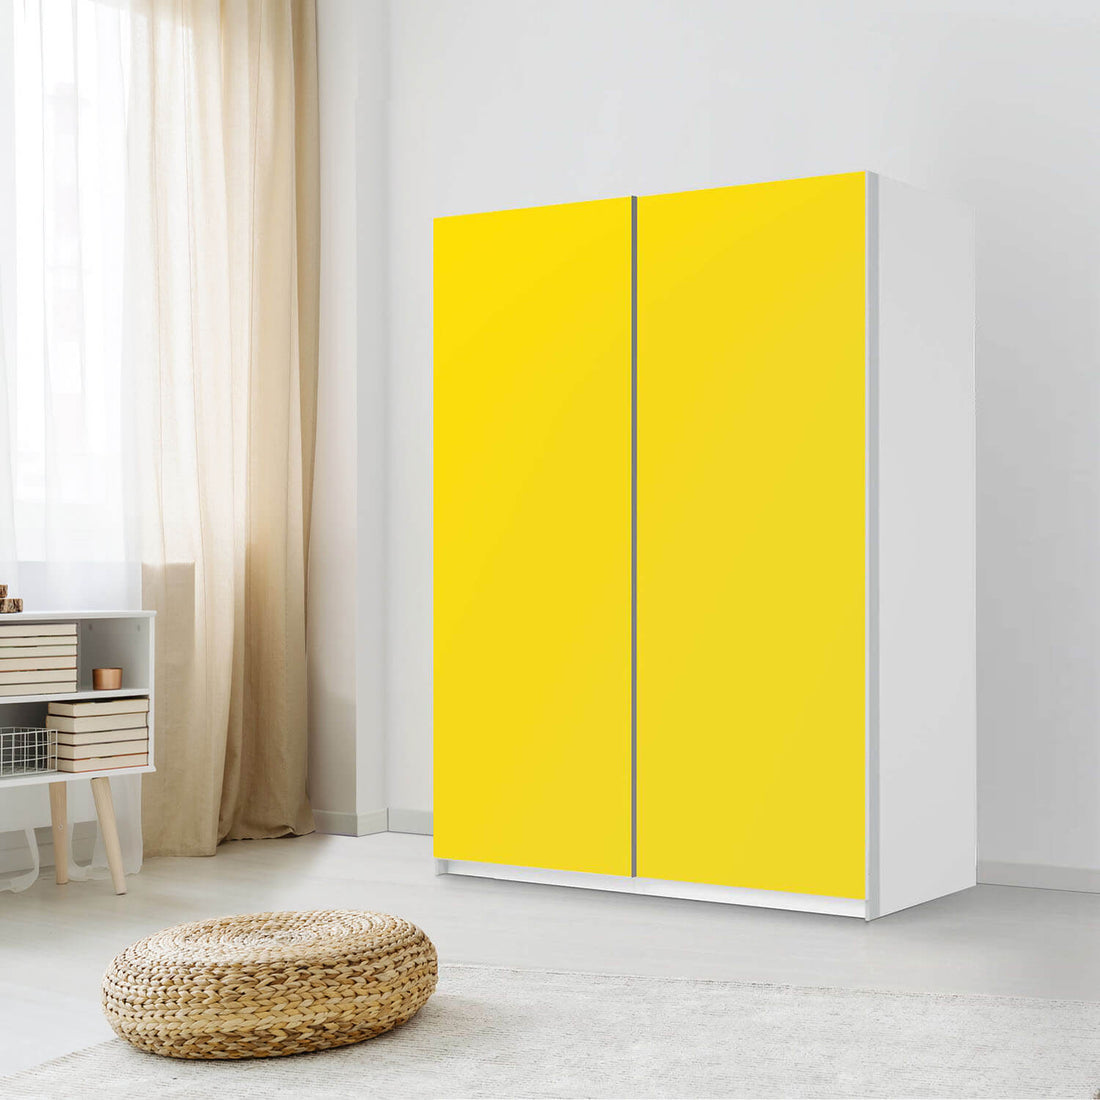 Möbel Klebefolie Gelb Dark - IKEA Pax Schrank 201 cm Höhe - Schiebetür 75 cm - Schlafzimmer